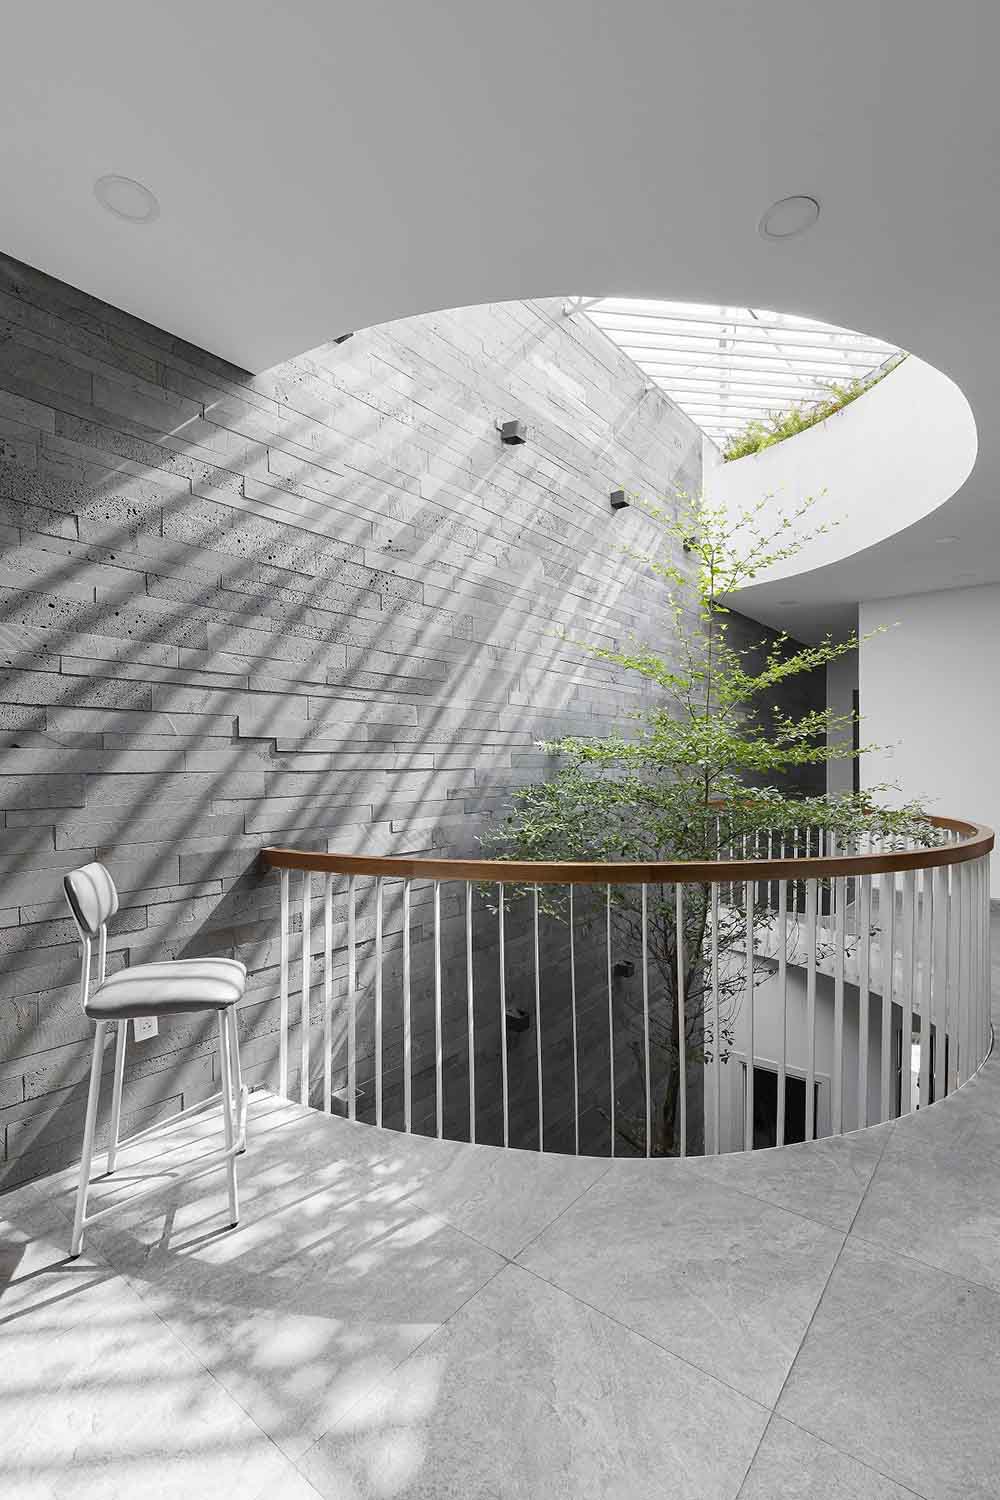 Thiết kế nội thất nhà phố 2 tầng với giếng trời giúp thông gió và lấy ánh sáng tự nhiên